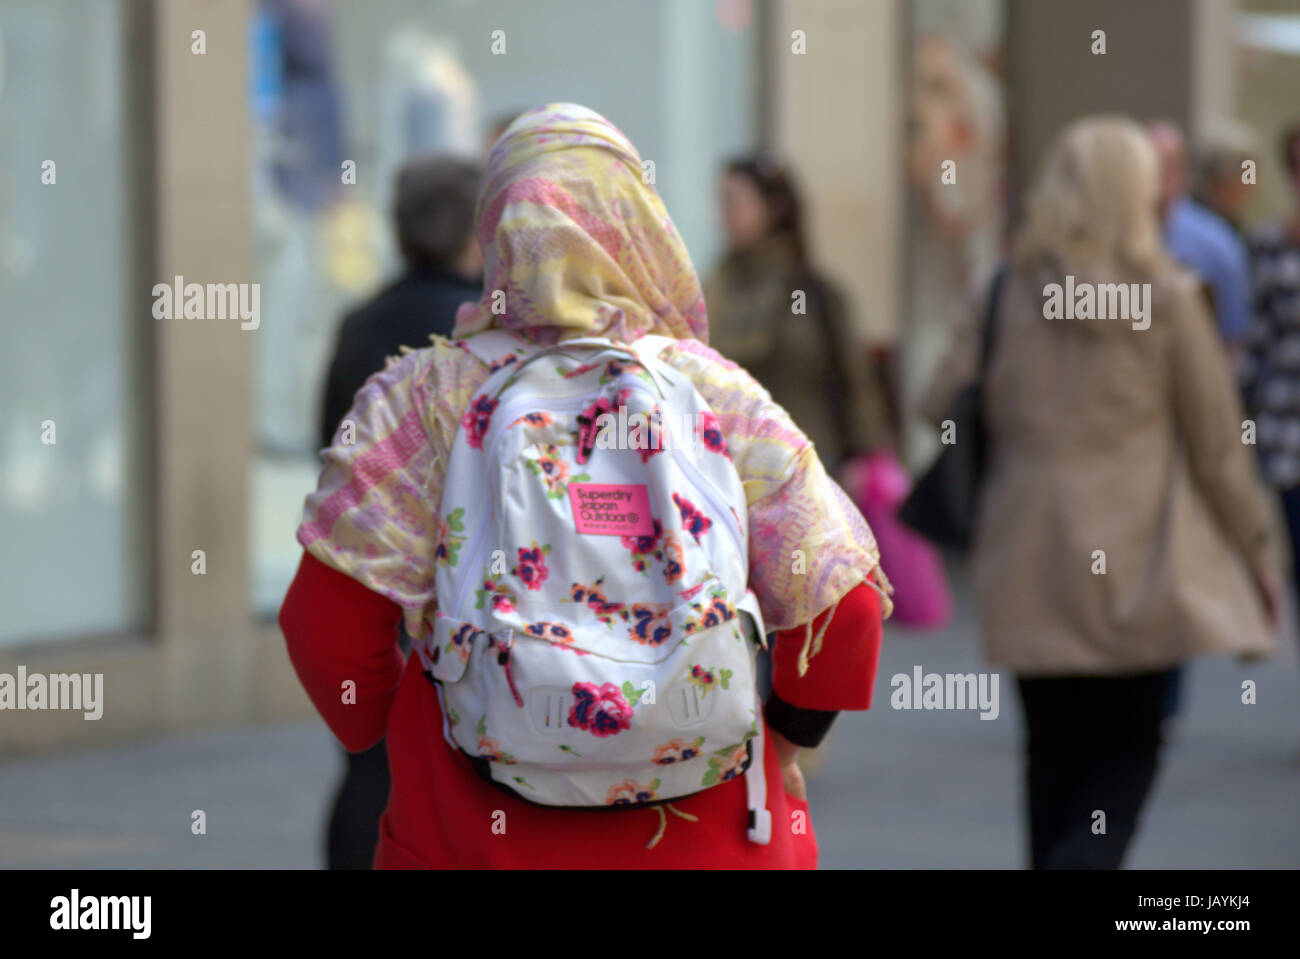 Jeune femme musulmane portant le hijab foulard marcher seule dans la ville Banque D'Images